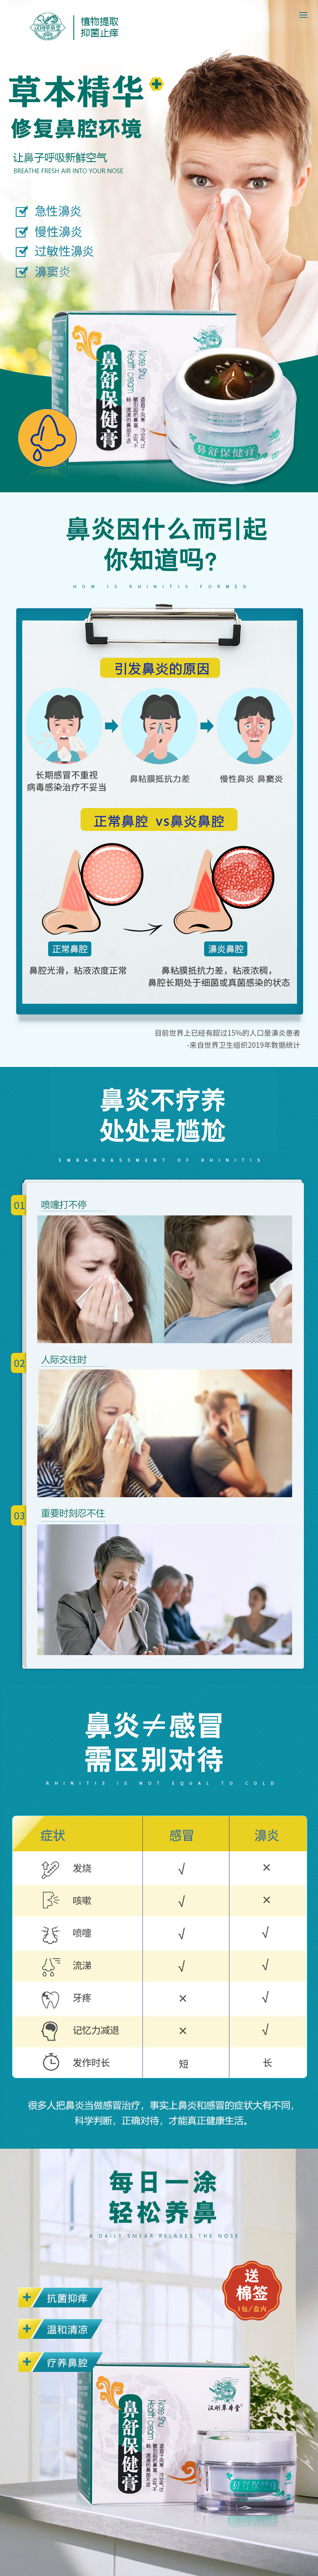 鼻炎广告语图片